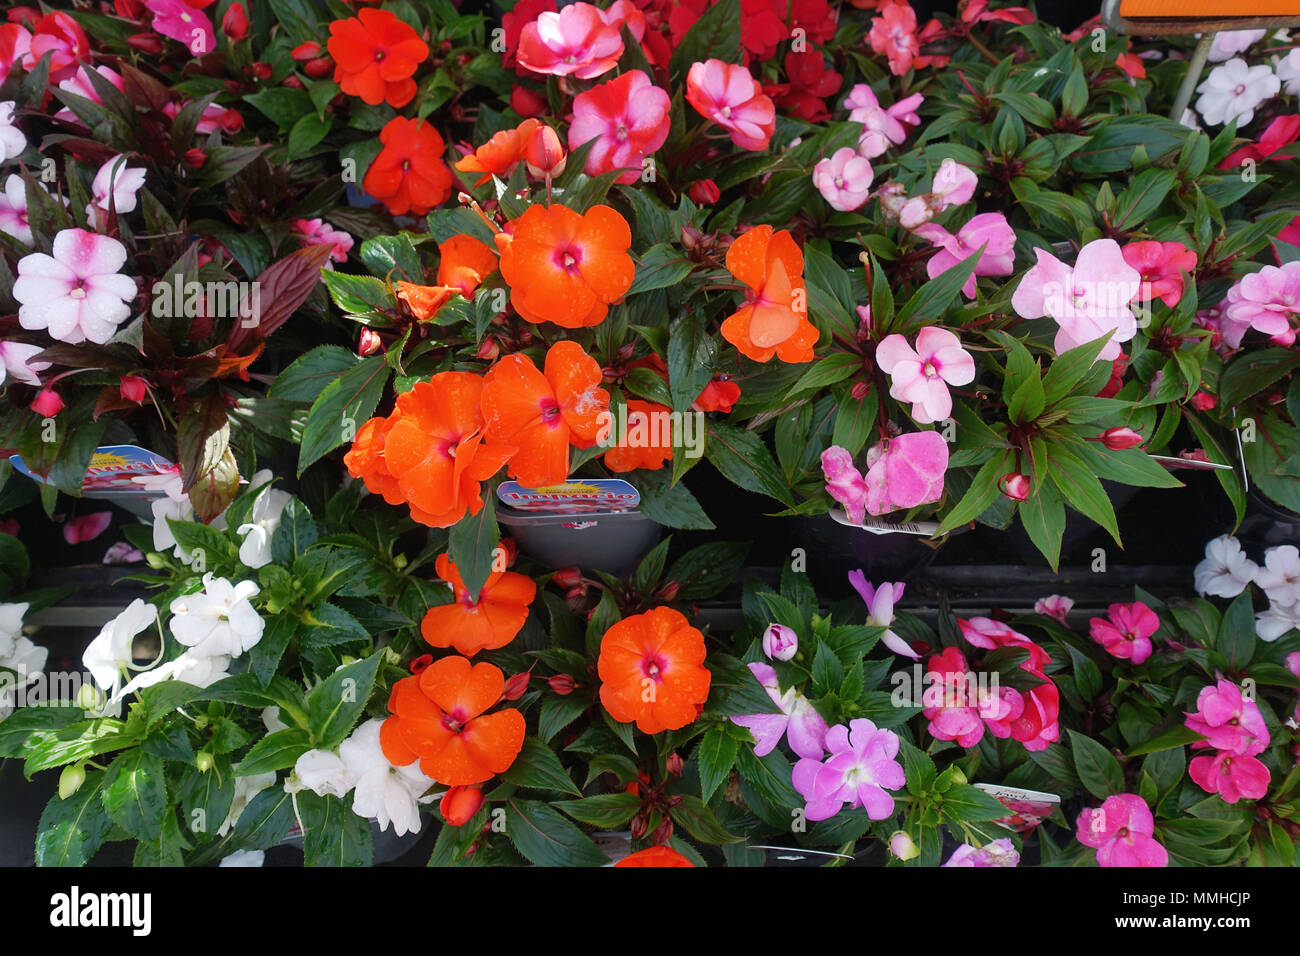 Impatiens fiori in piena fioritura Foto Stock